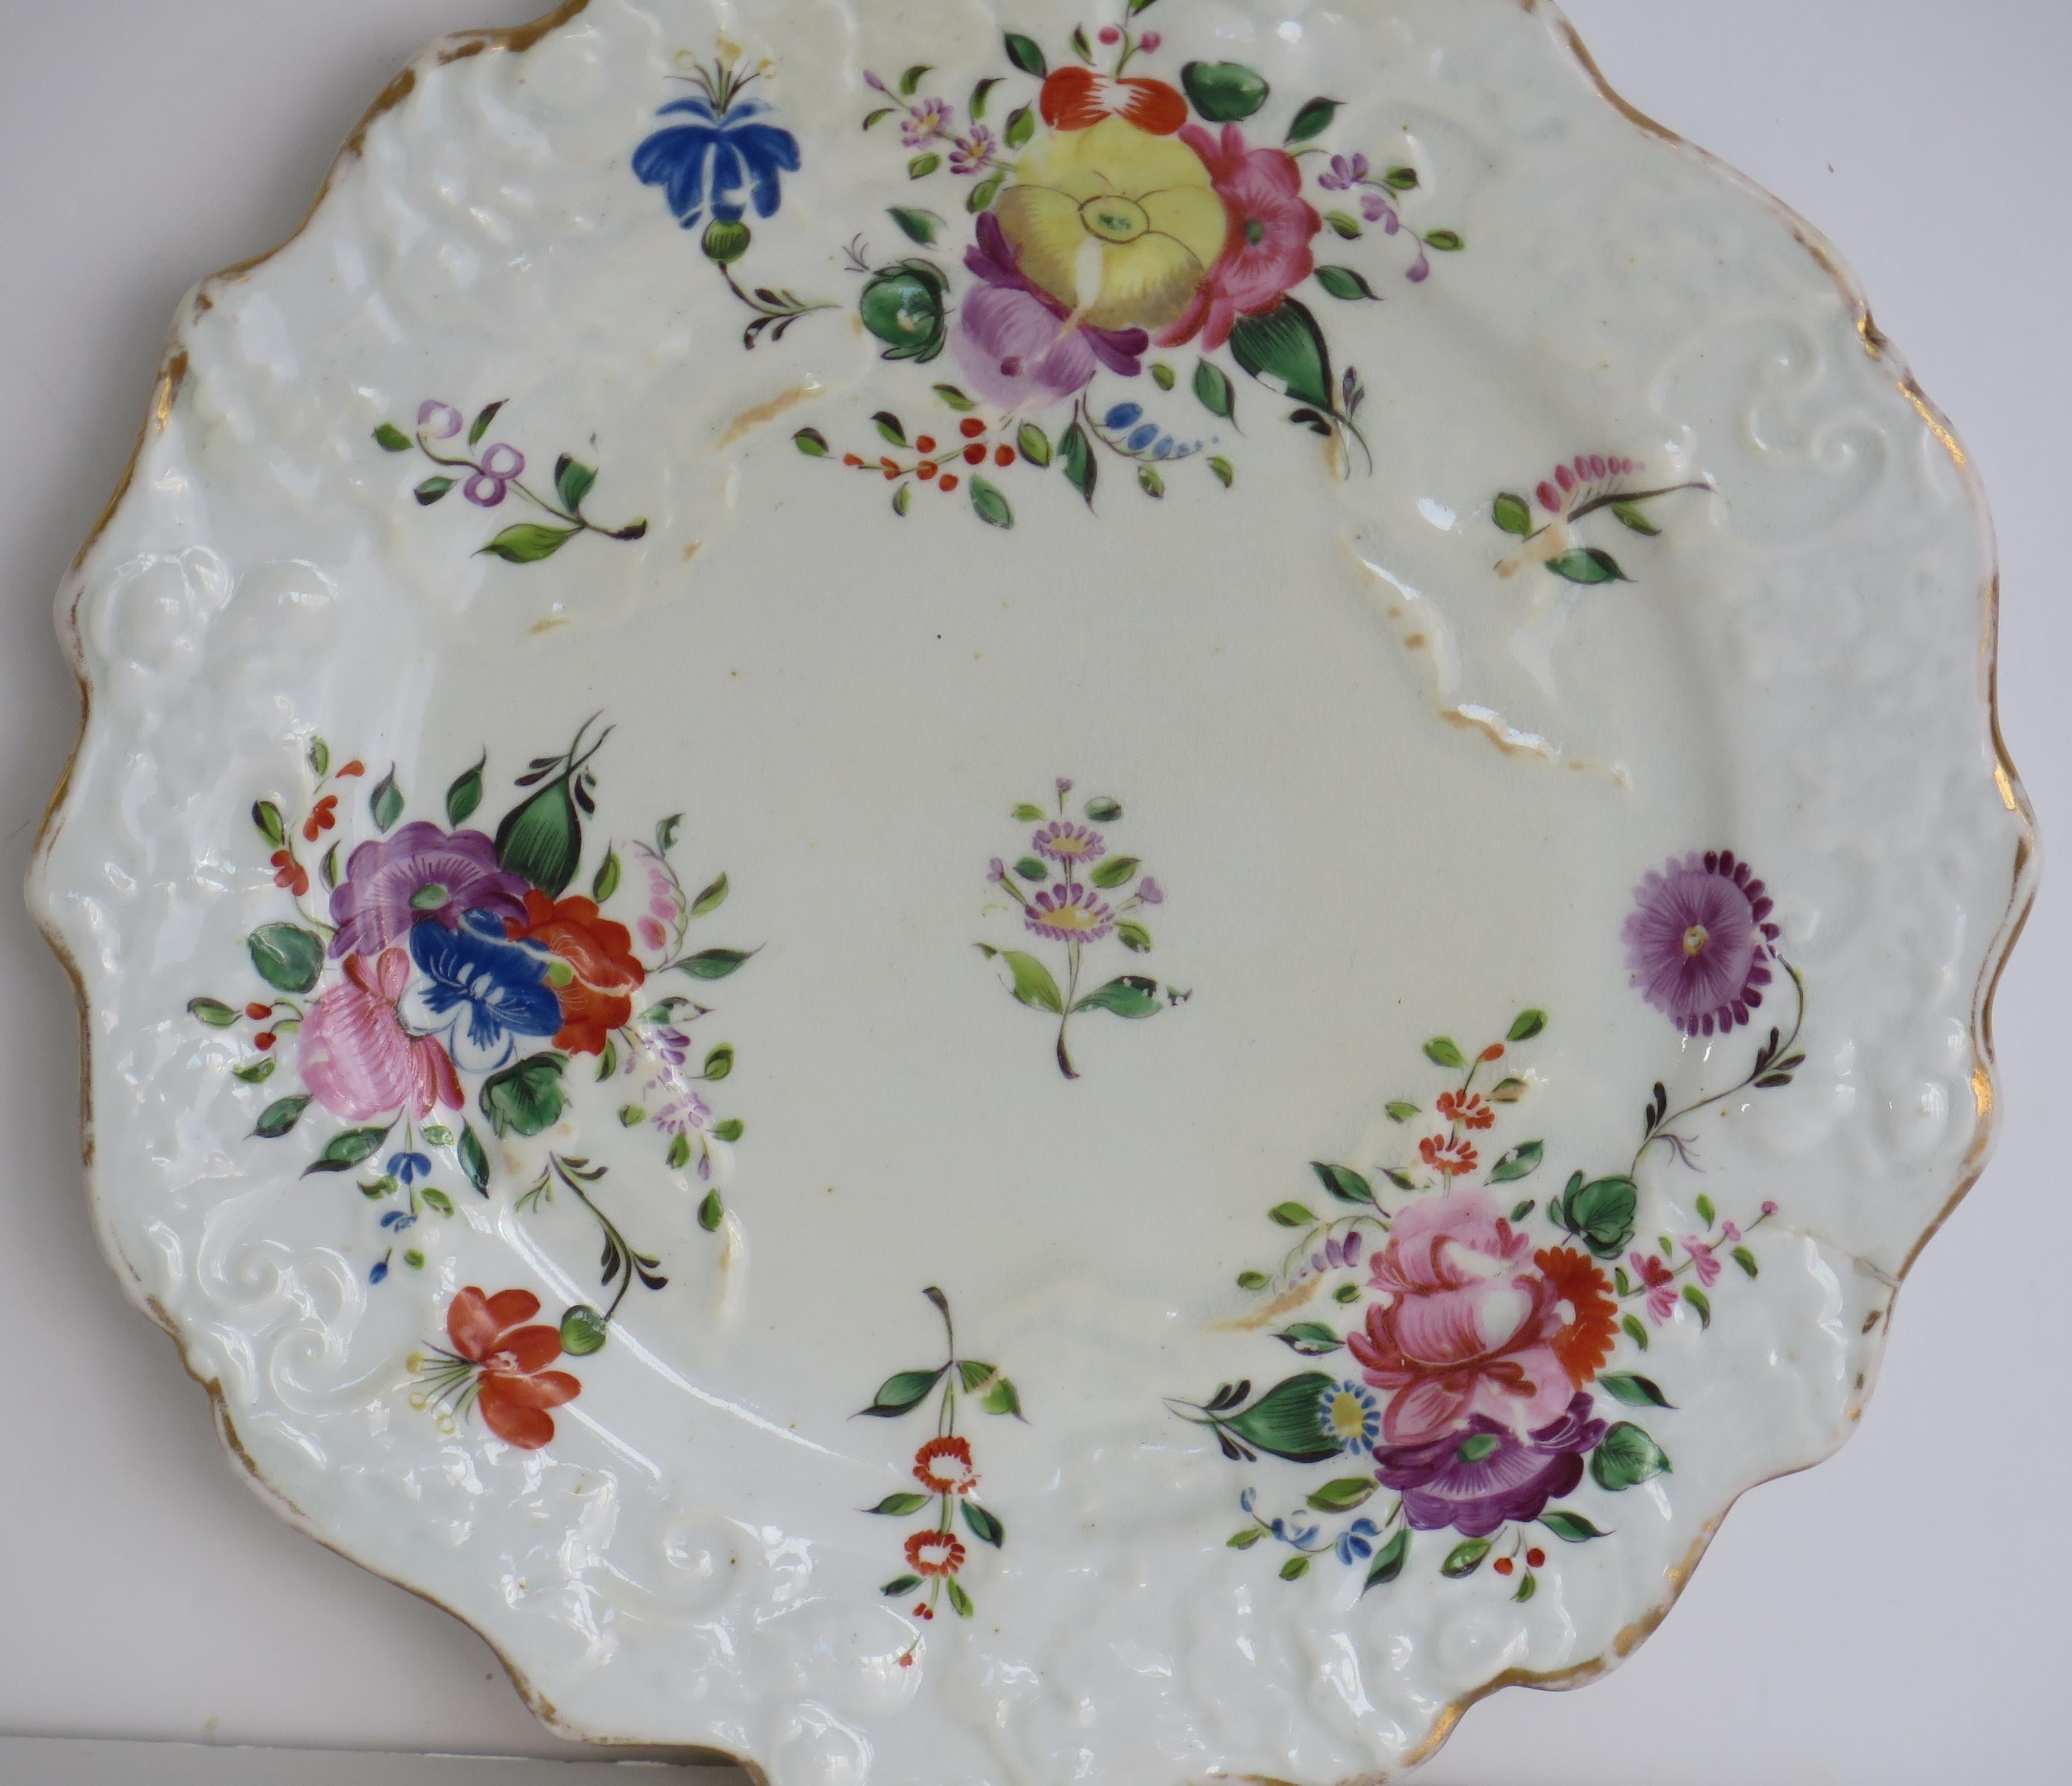 Il s'agit d'une assiette à dessert en porcelaine de Mason's bone china avec un motif peint à la main appelé Central Spray Mixed Border. 

L'assiette a une forme moulée en forme de feuille de chou. 

Il s'agit d'un magnifique motif floral peint à